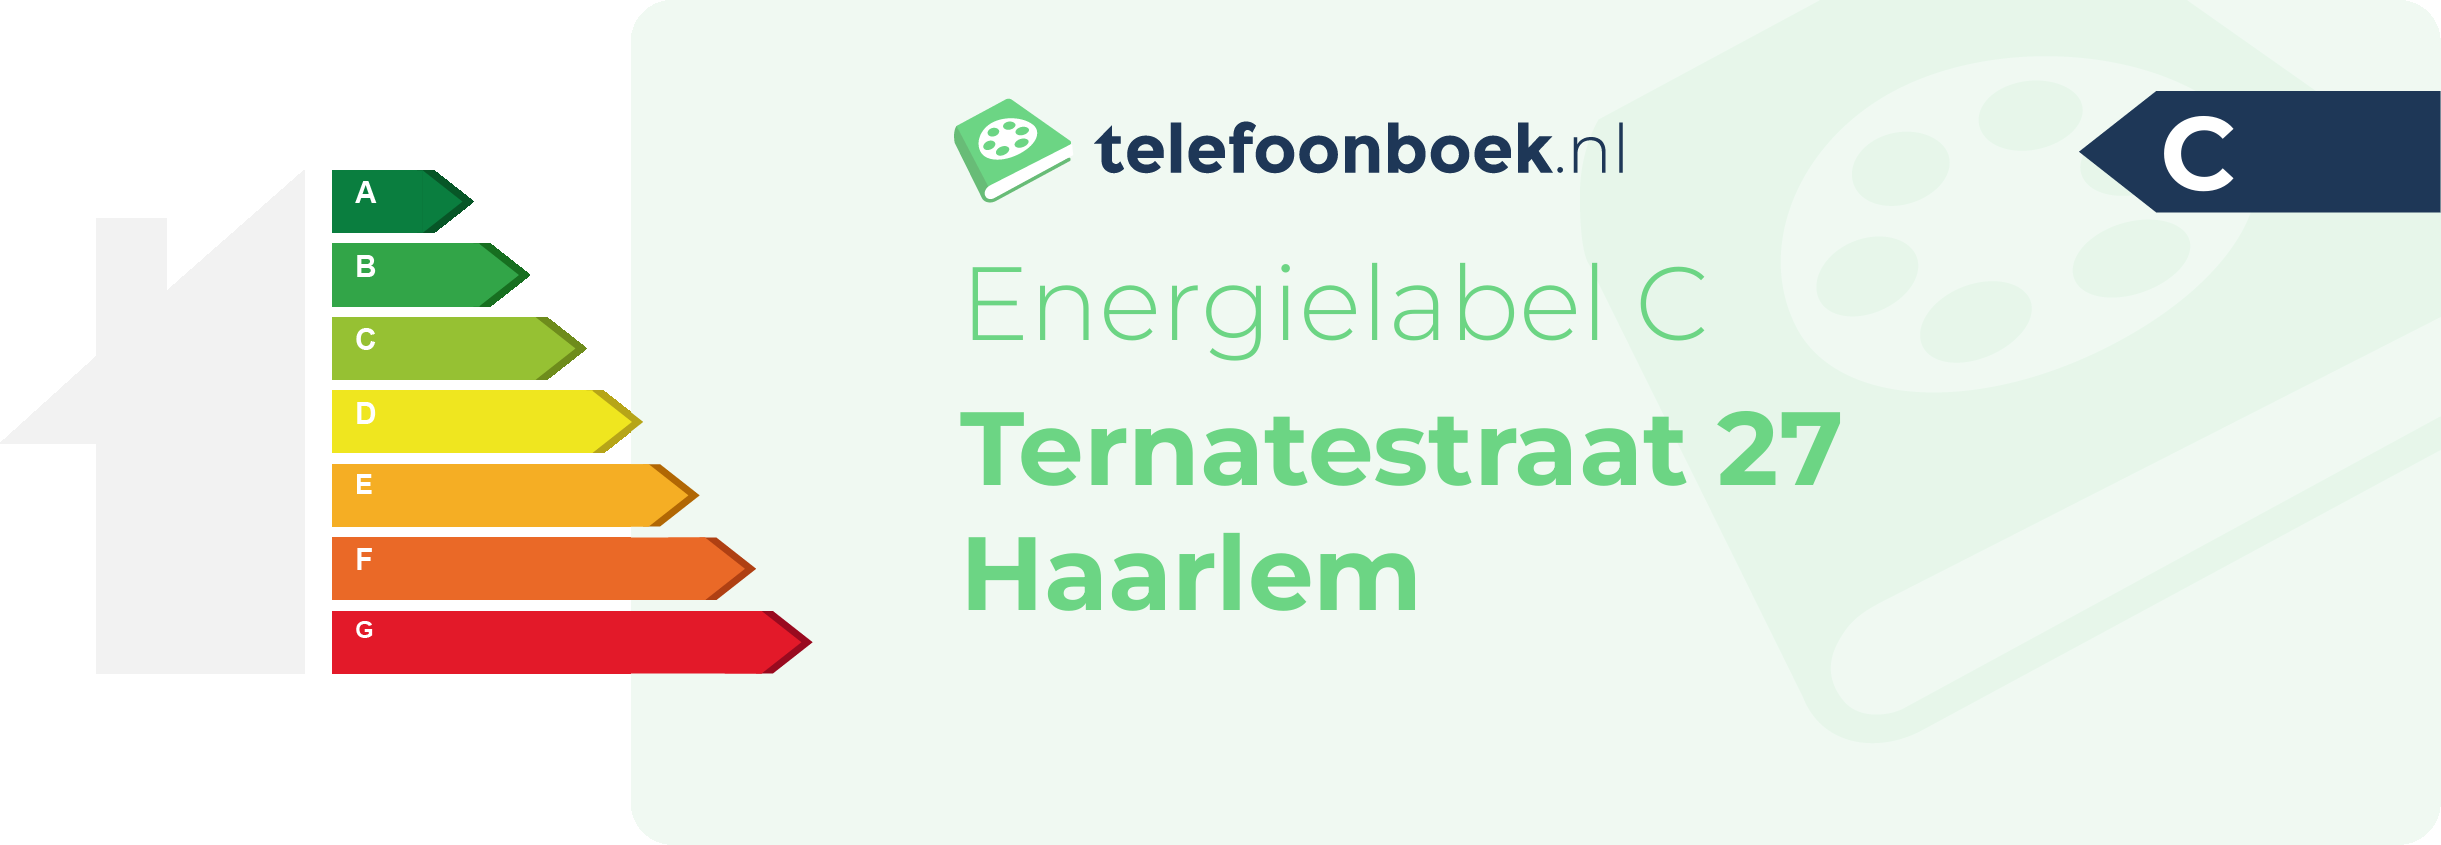 Energielabel Ternatestraat 27 Haarlem